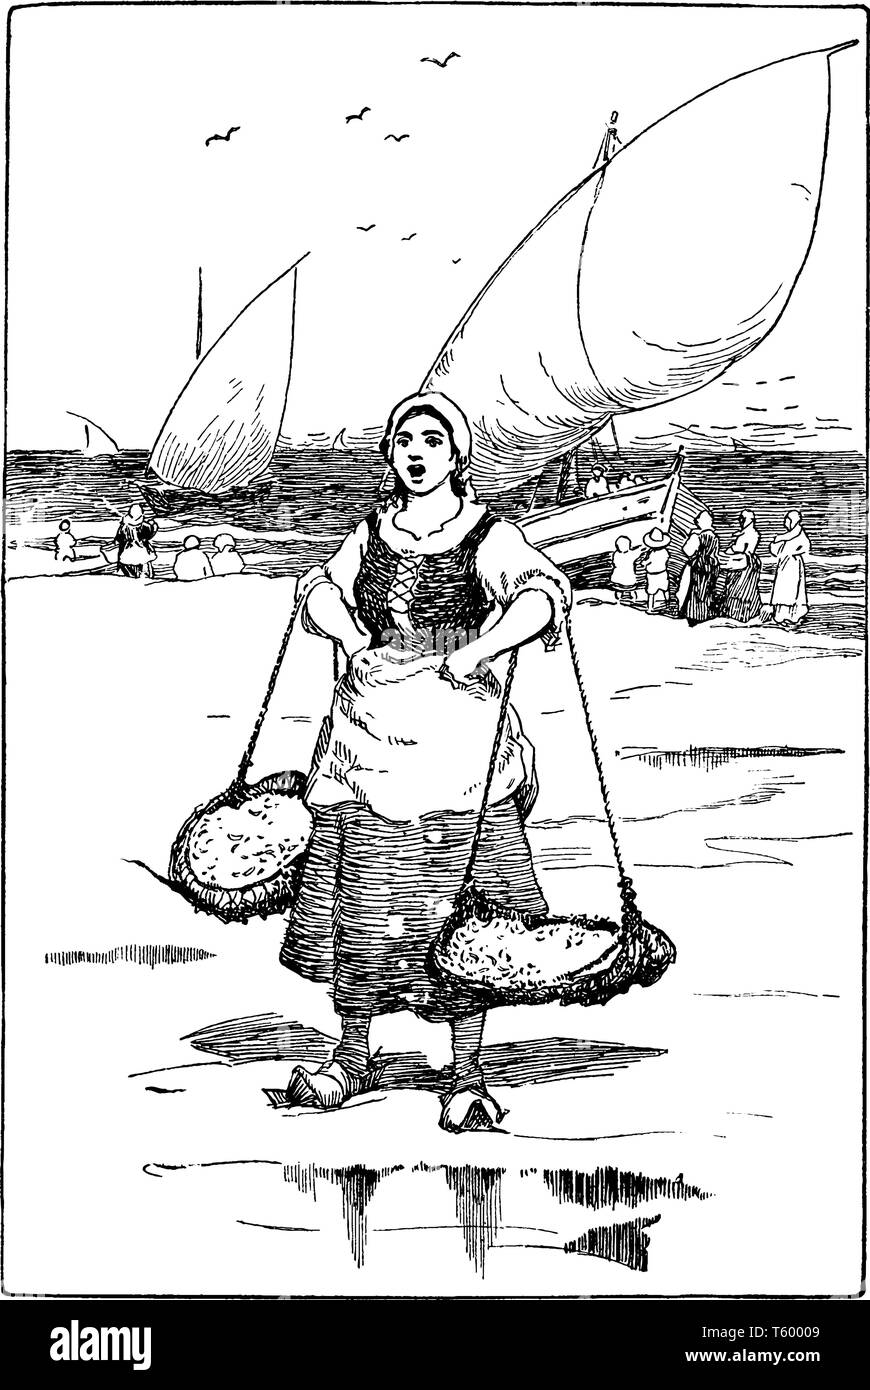 Une femme vit attraper des sardines, vintage dessin ou gravure illustration Illustration de Vecteur